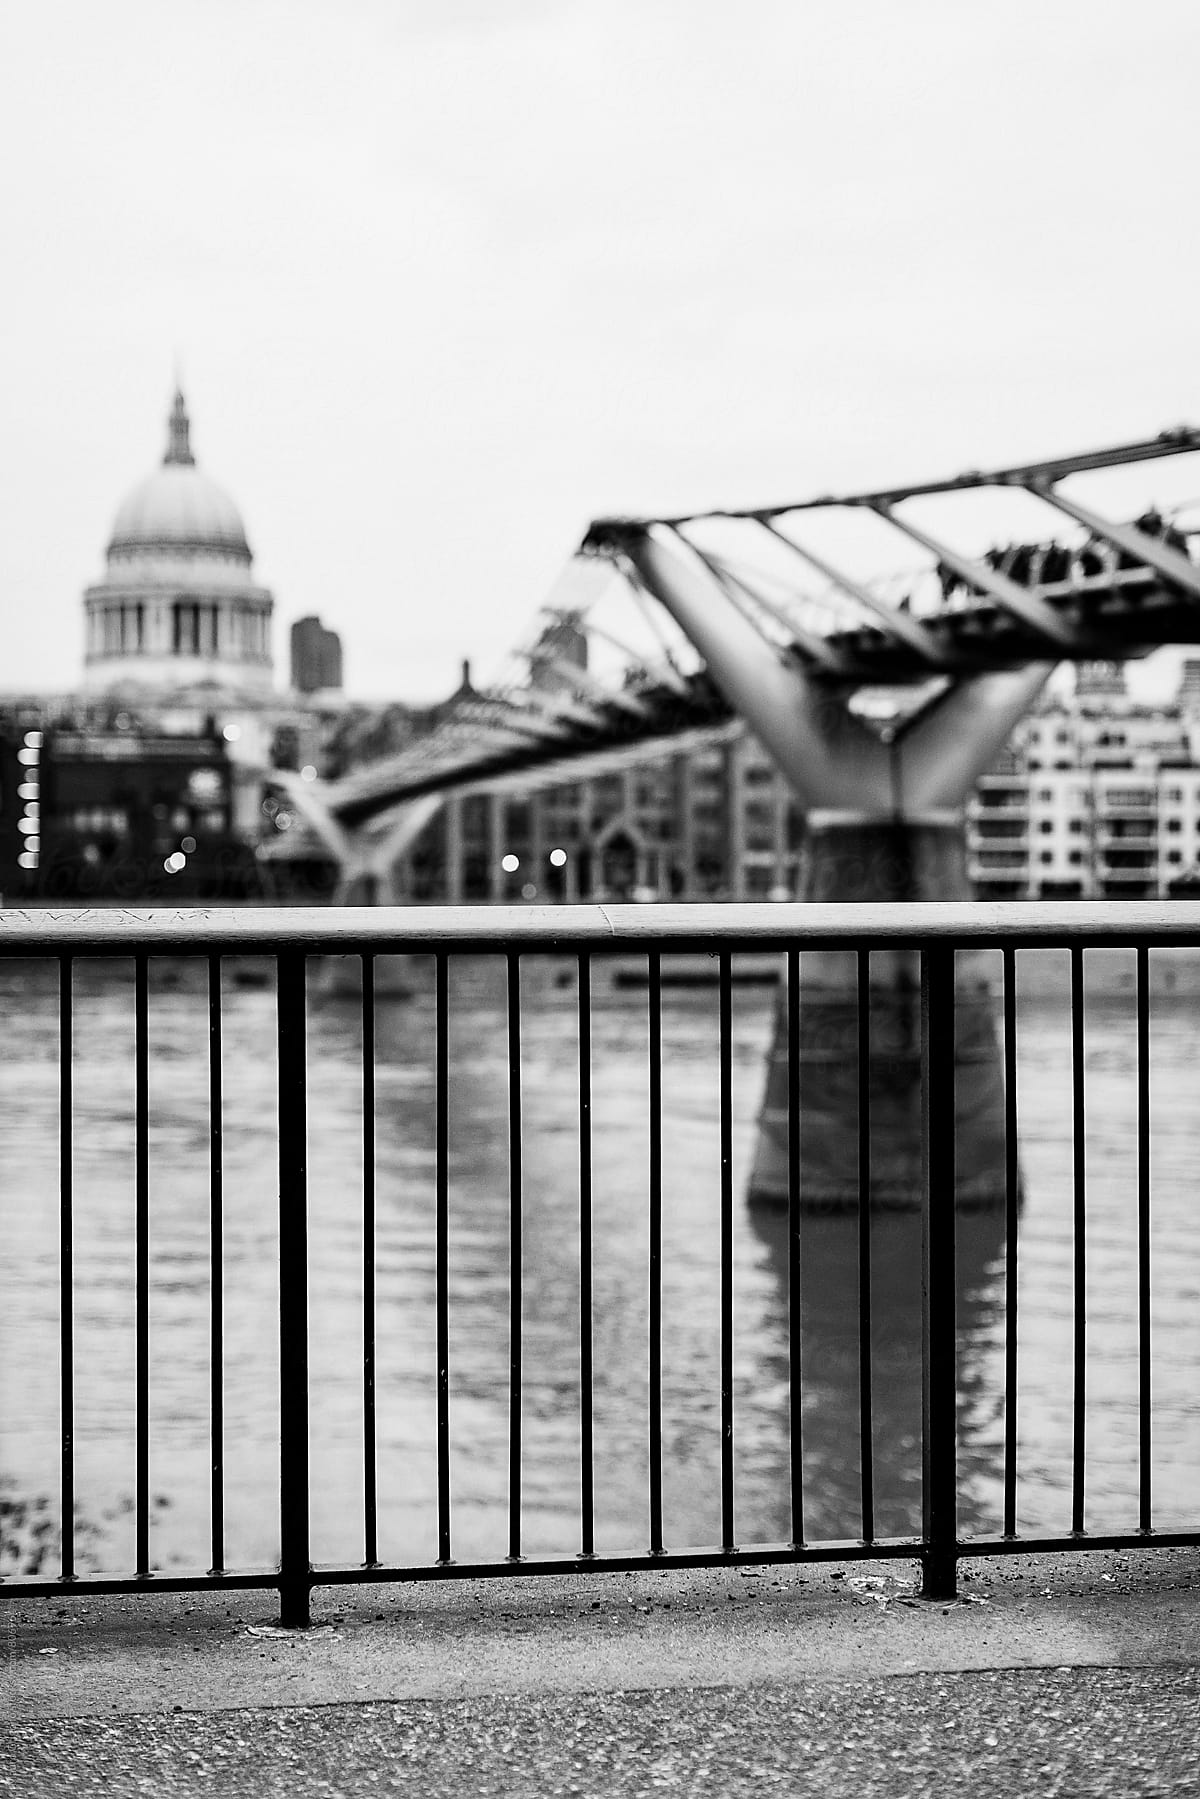 The Millennium Bridge in London